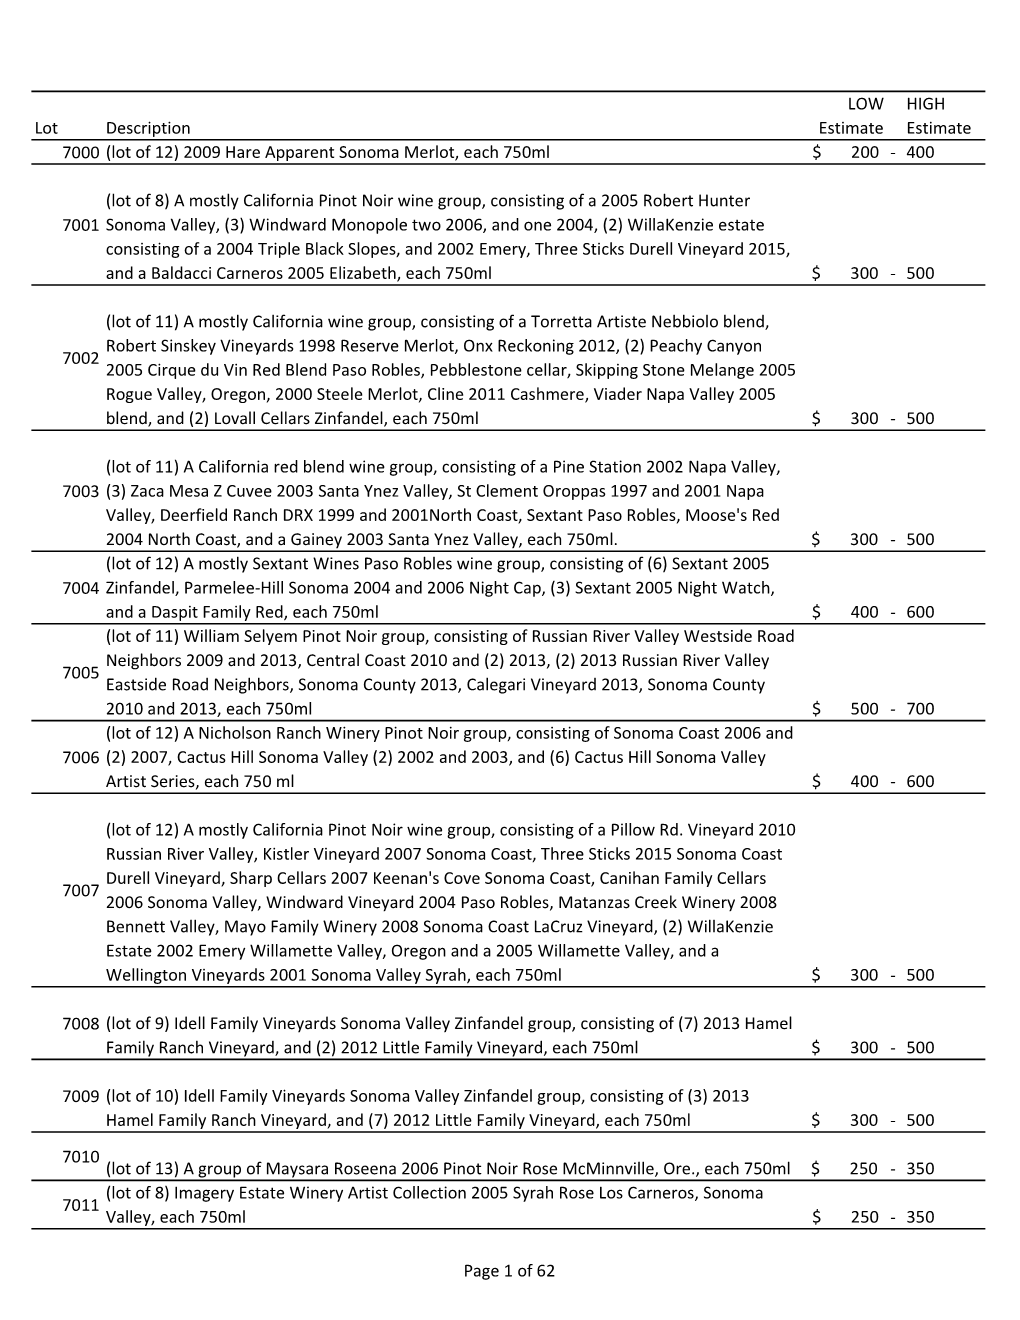 (Lot of 12) 2009 Hare Apparent Sonoma Merlot, Each 750Ml $ 200 - 400